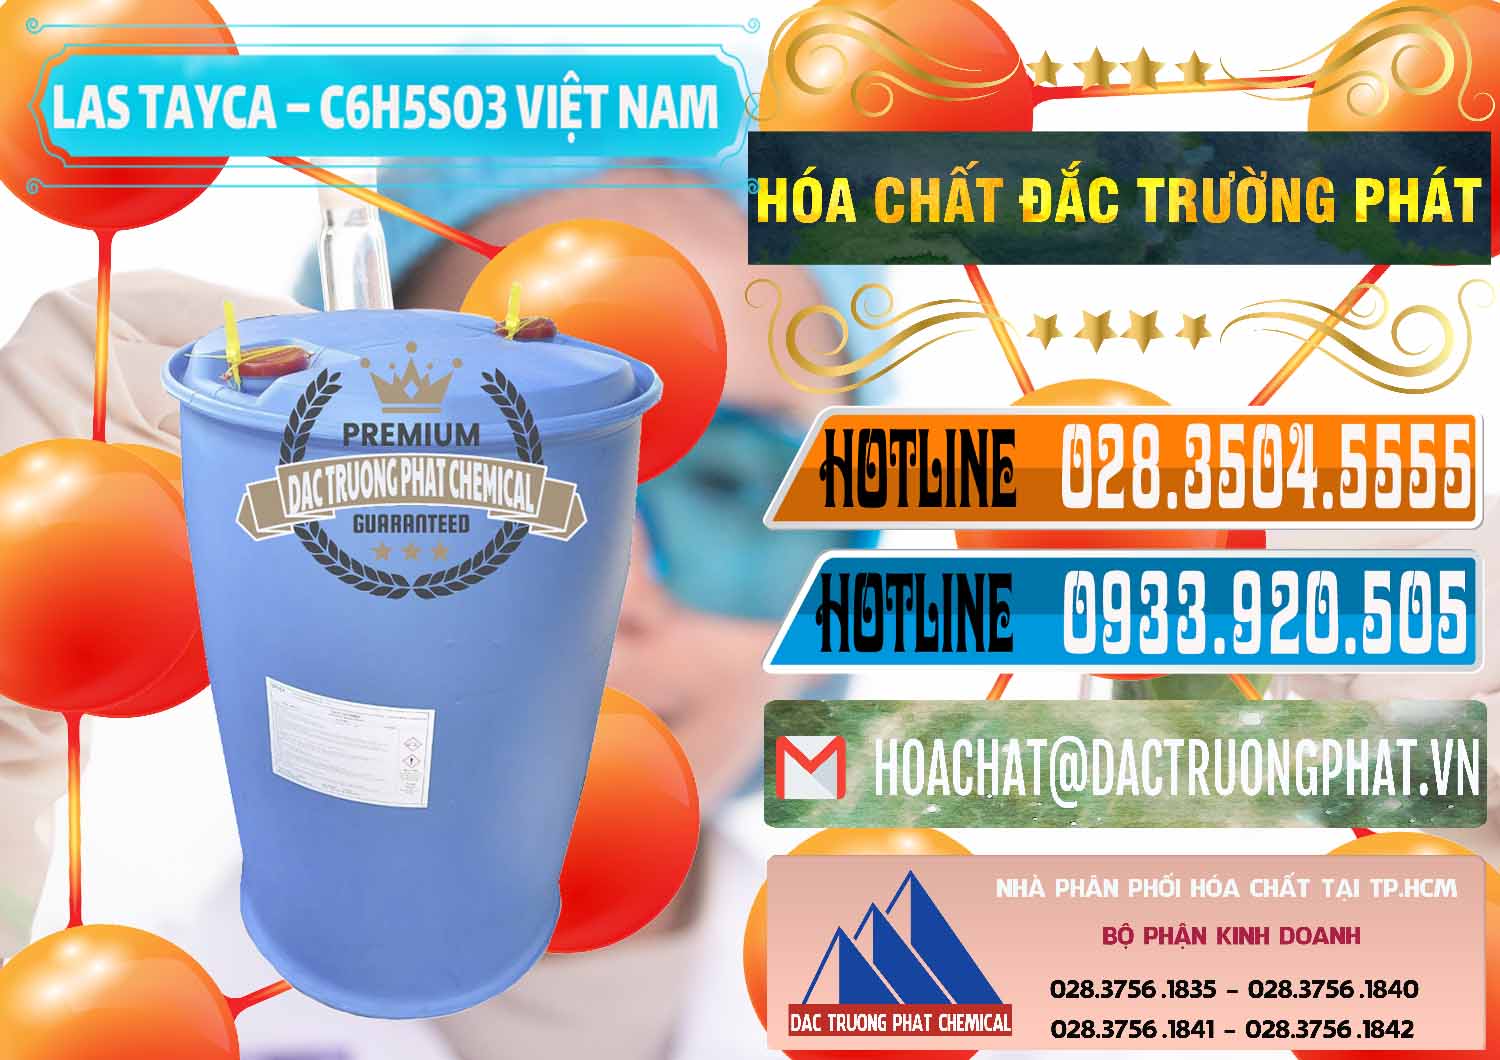 Công ty chuyên cung ứng - bán Chất tạo bọt Las Tayca Việt Nam - 0305 - Nhà phân phối _ cung ứng hóa chất tại TP.HCM - stmp.net